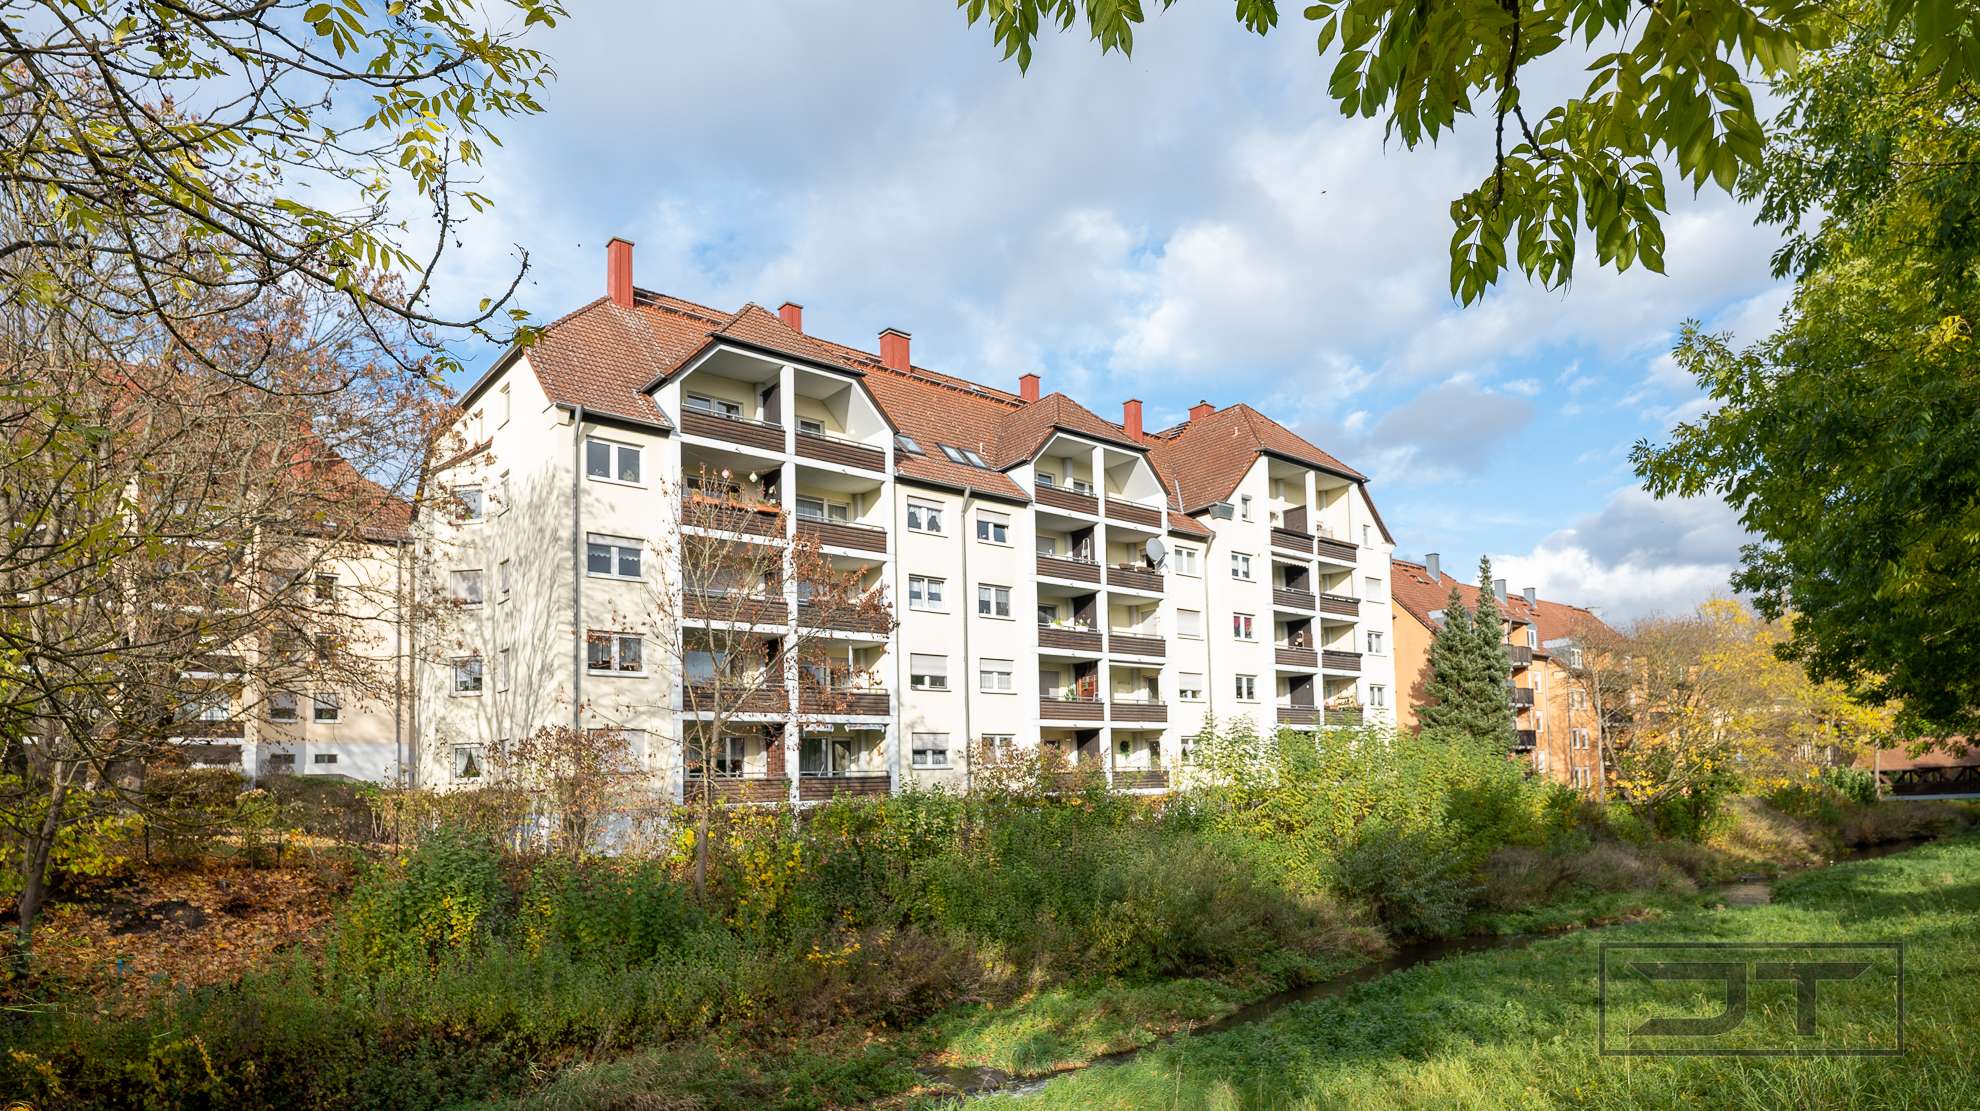 Schicke Stadtwohnung mit Sonnenbalkon und Blick ins Grün in Top-Lage in Bayreuth City!